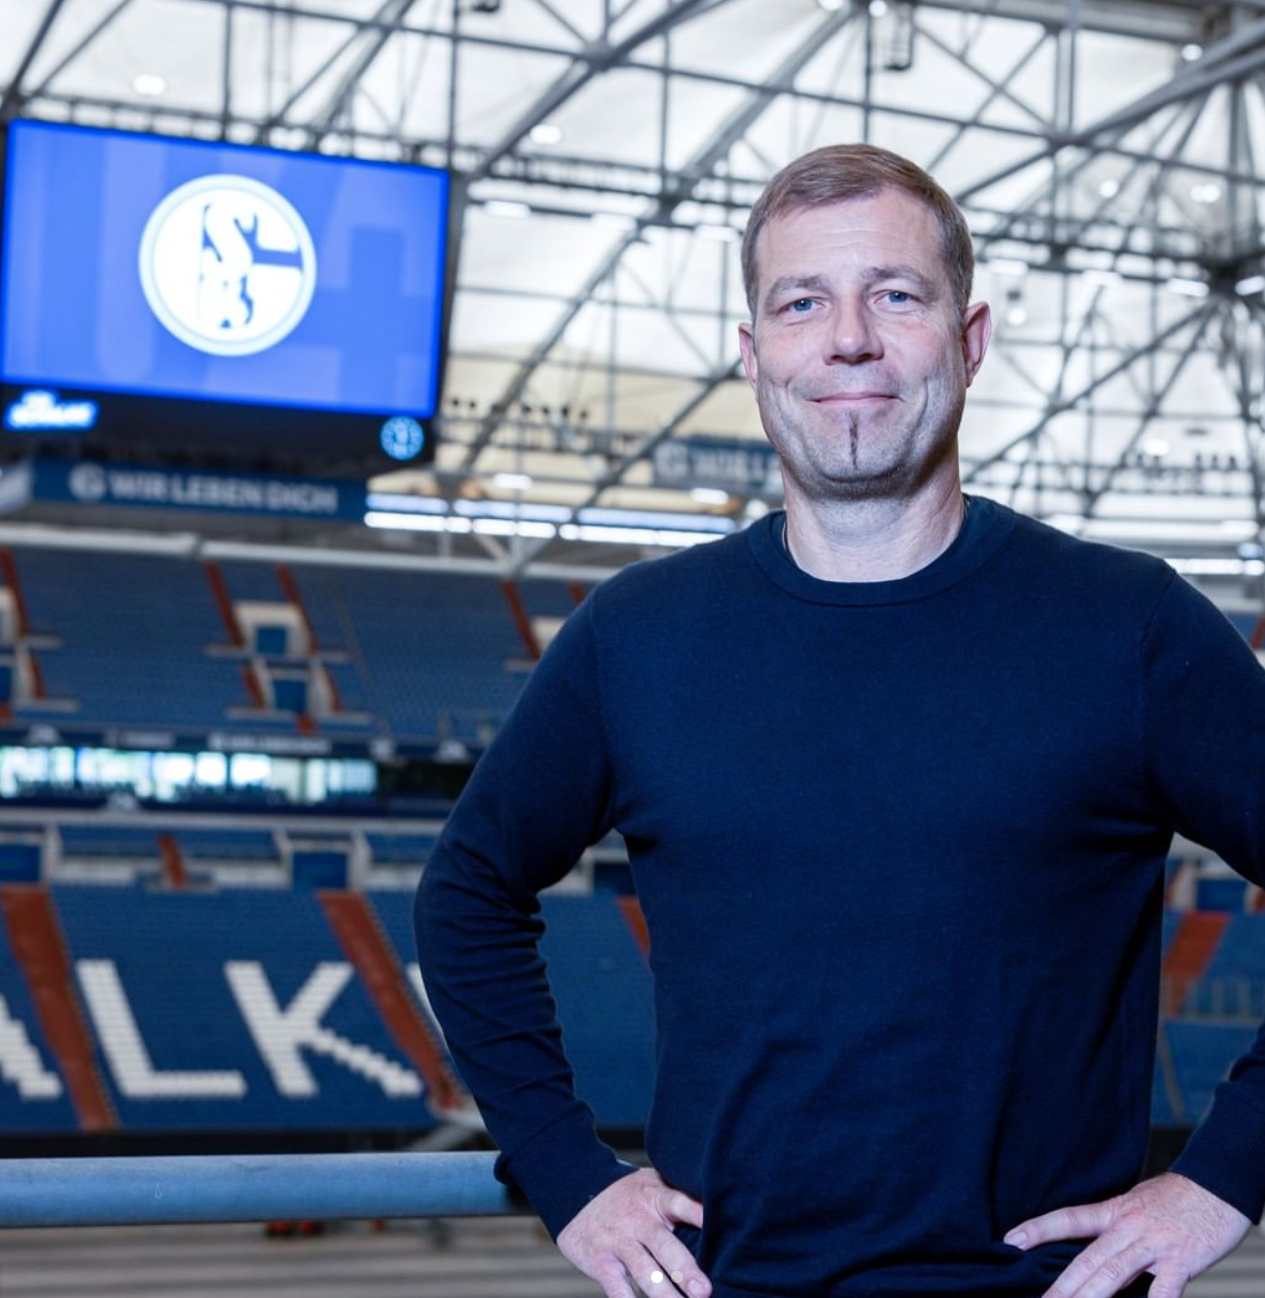 Frank Kramer übernimmt in der kommenden Saison den FC Schalke 04